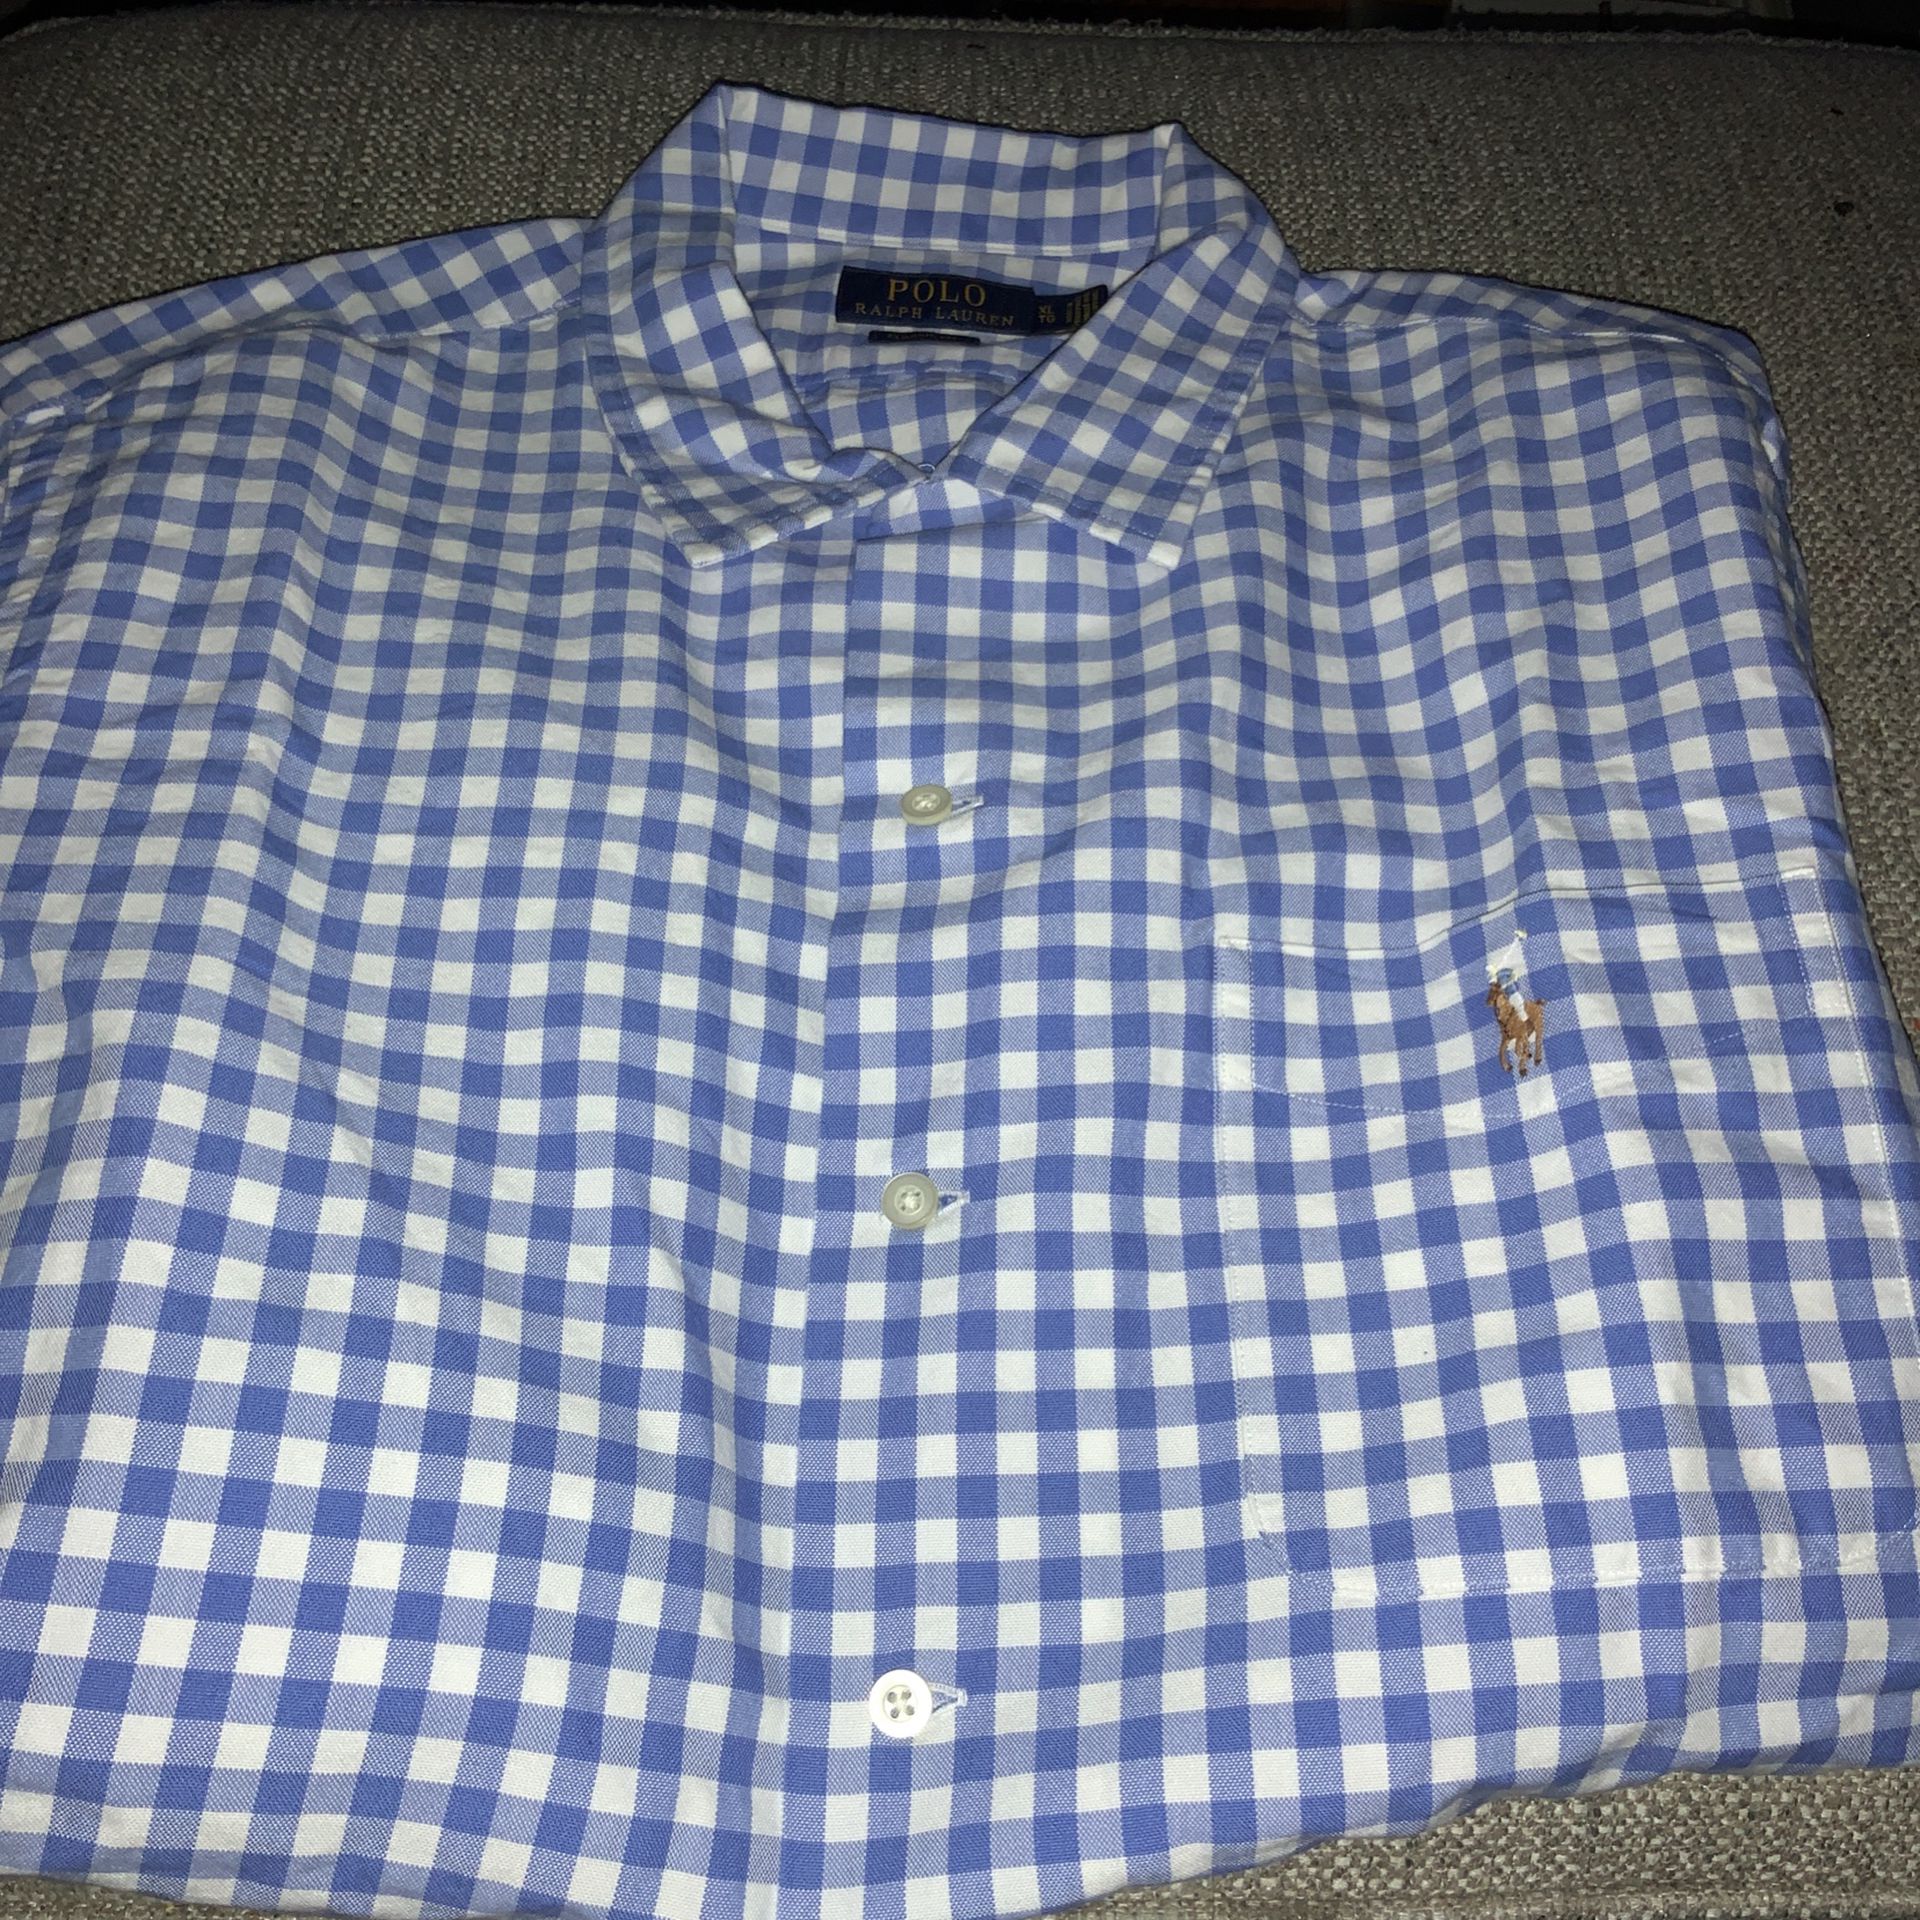 Polo Ralph Lauren Flannel Shirt Men’s Size Xl New Original 